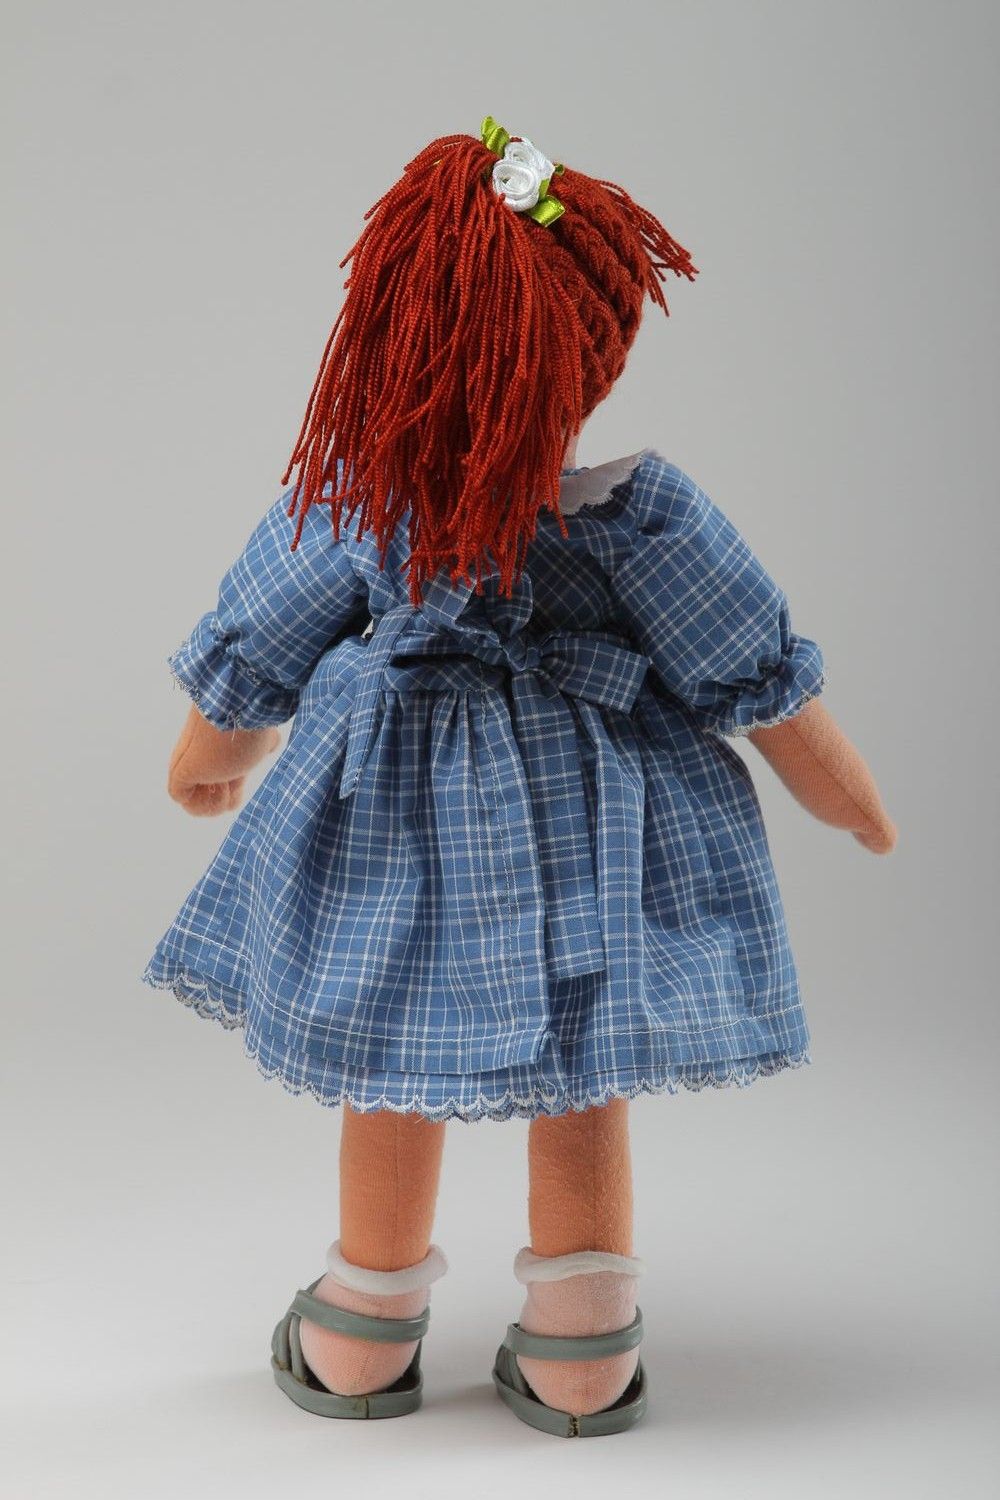 Кукла ручной работы кукла из ткани мягкая кукла расписанная акриловыми красками фото 3